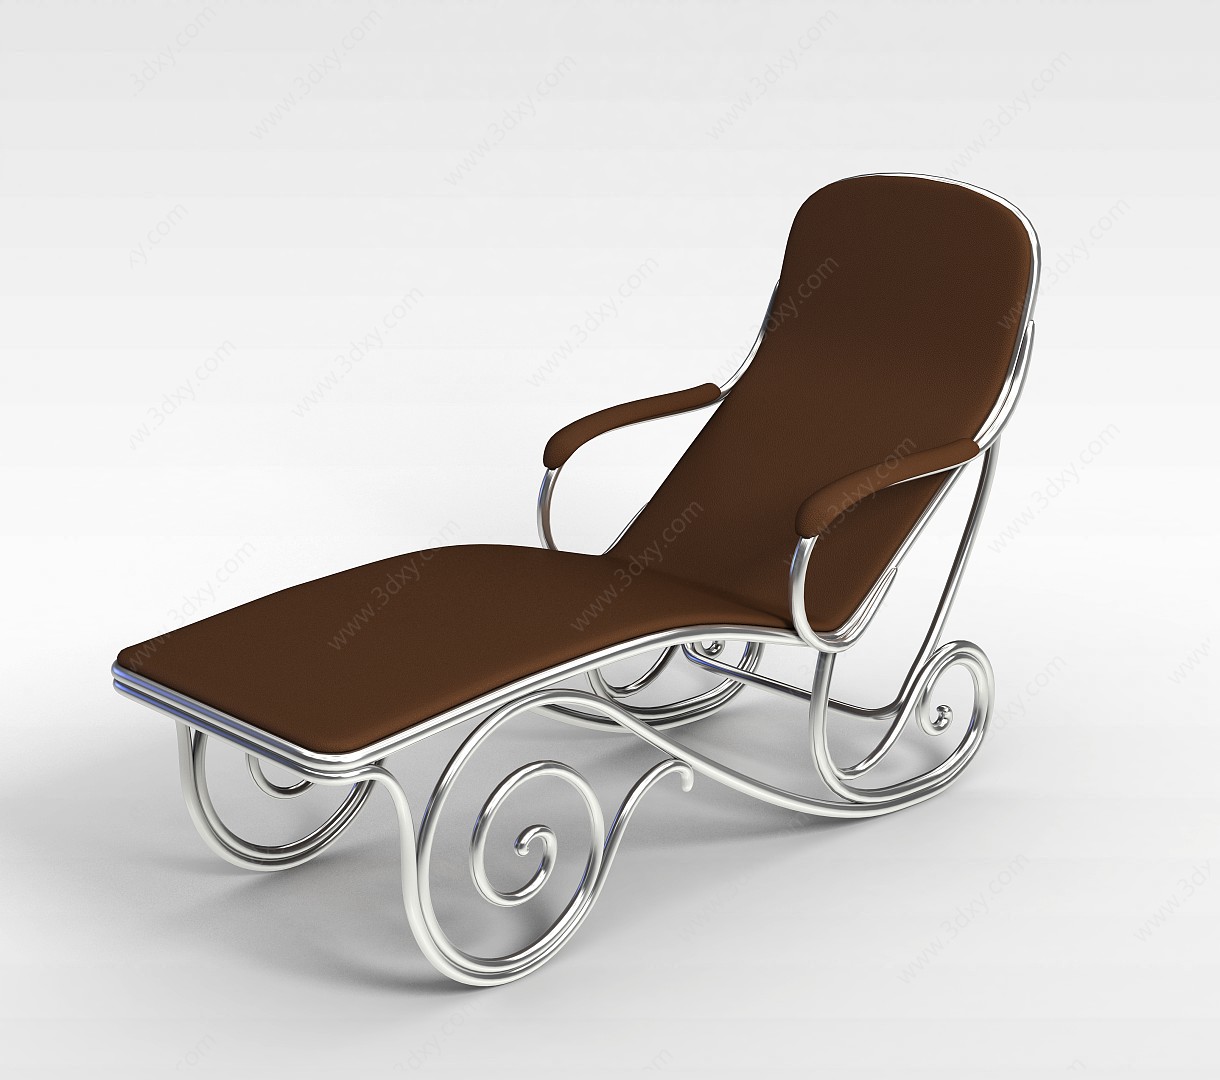 铁艺欧式风格躺椅3D模型